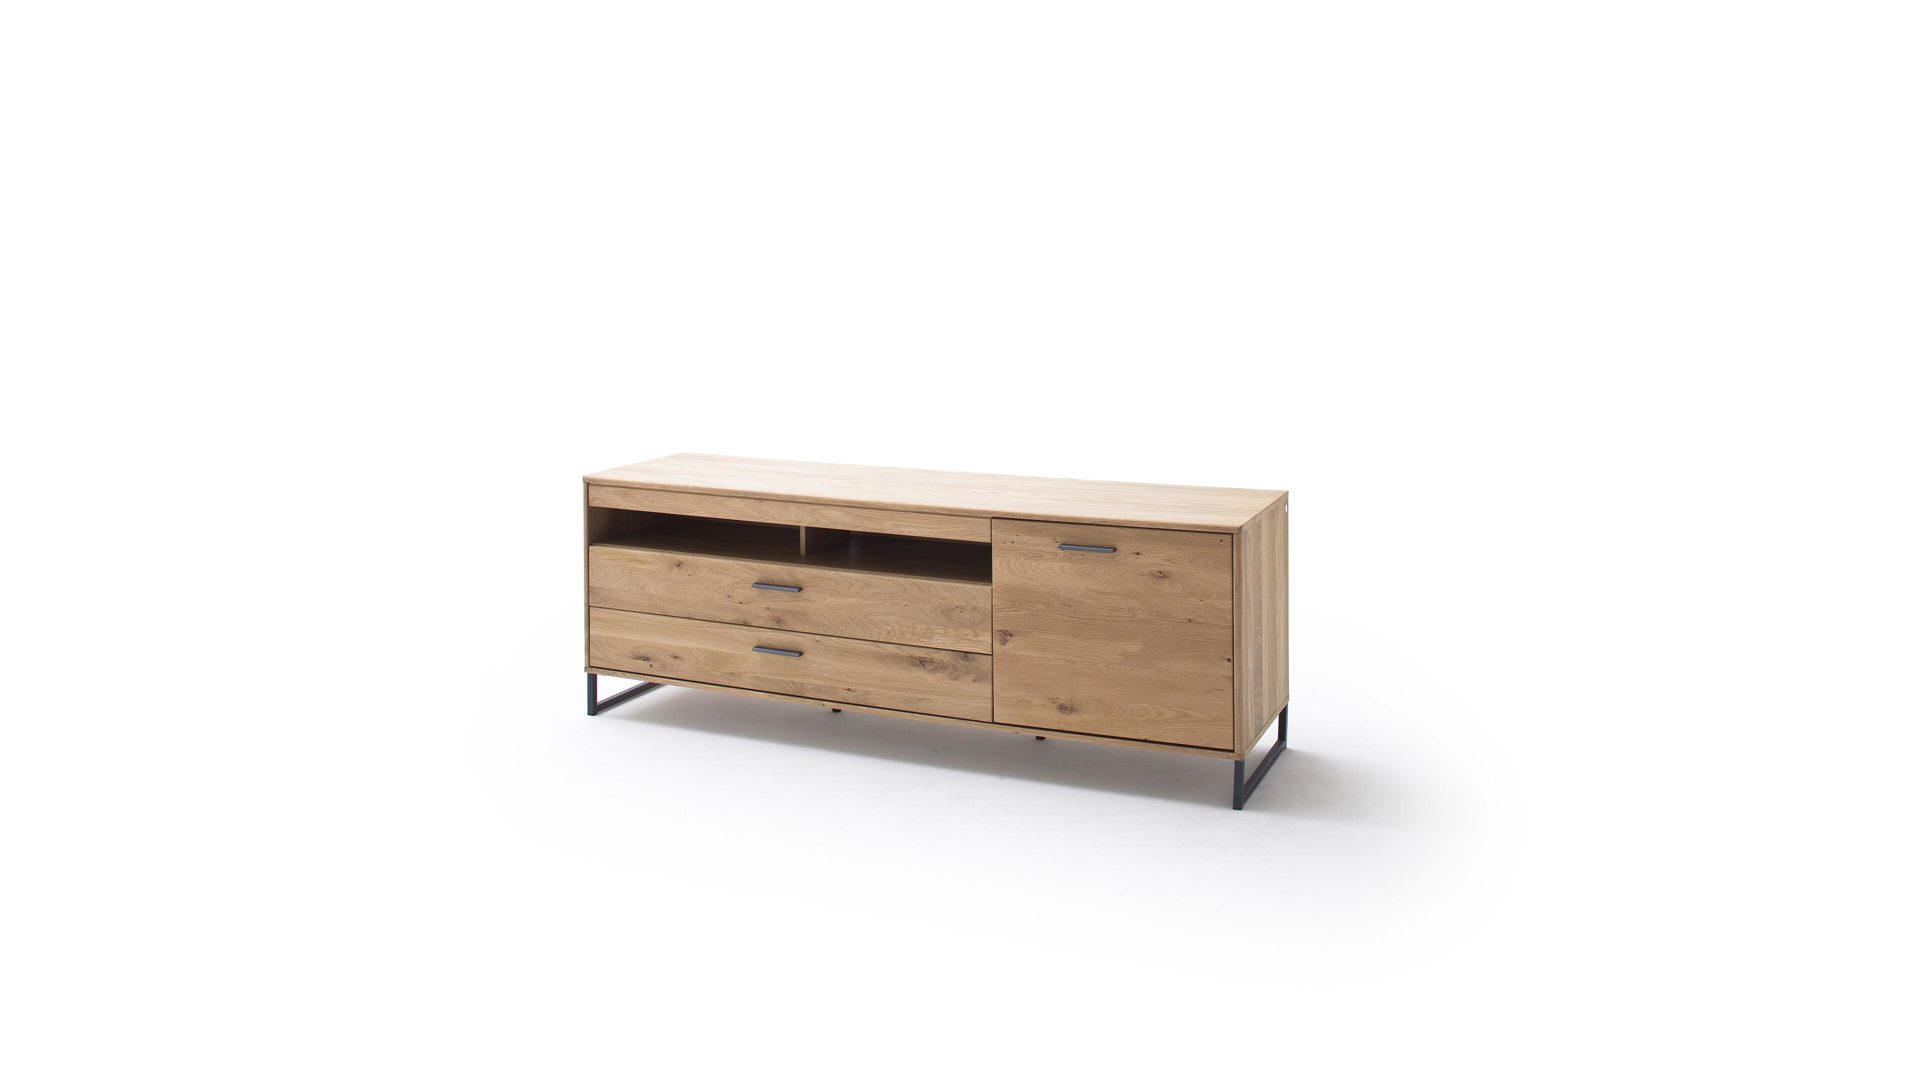 Medienmöbel Mca furniture aus Holz in Holzfarben Medienmöbel Bianco geölte Asteiche & anthrazitfarbene Lackoberflächen – Länge ca. 184 cm